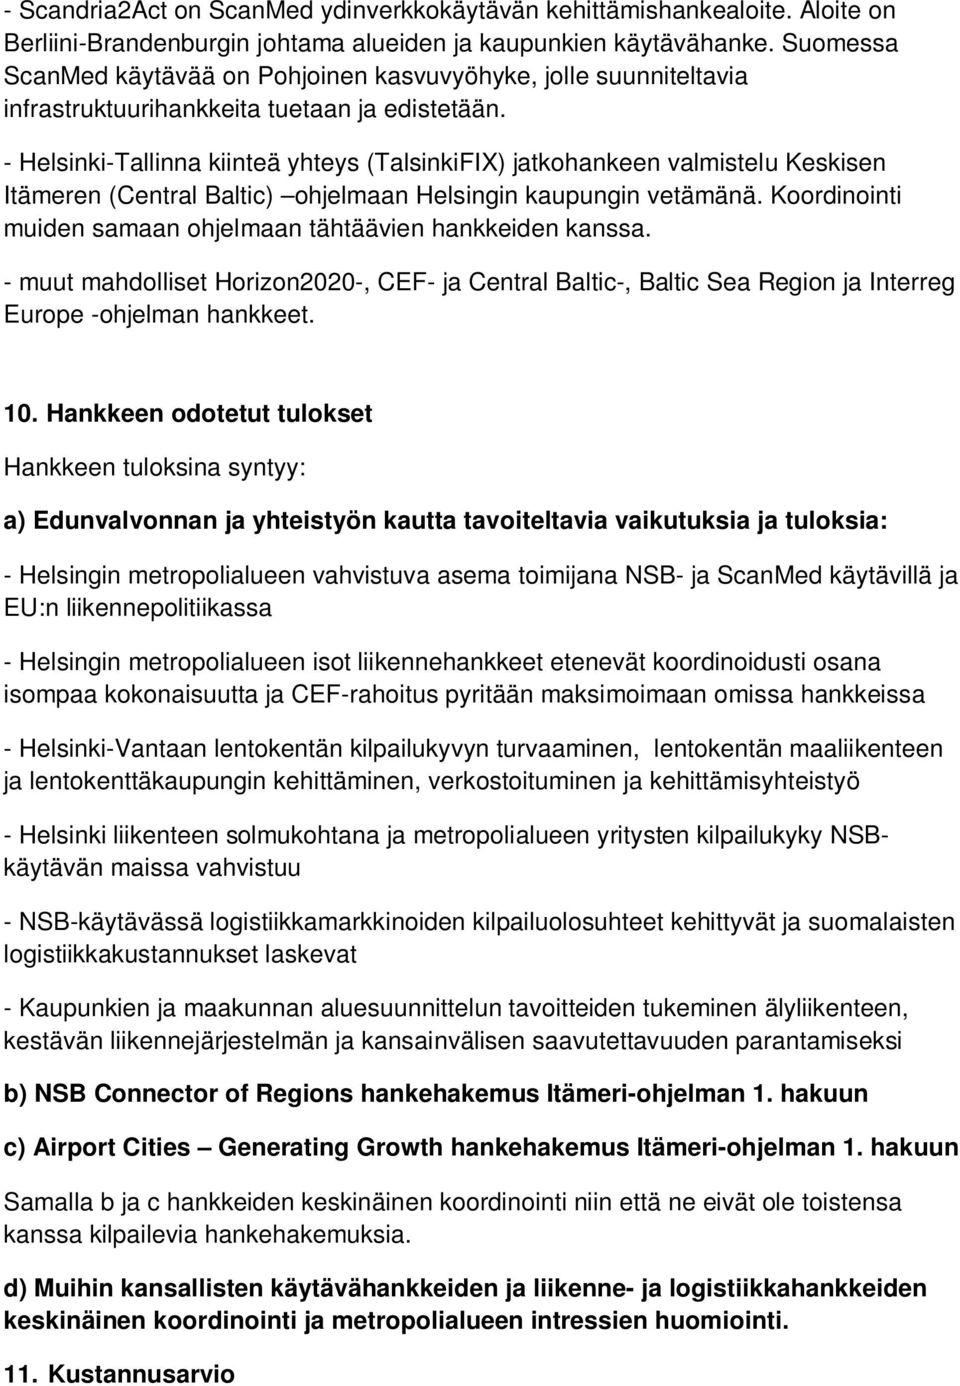 - Helsinki-Tallinna kiinteä yhteys (TalsinkiFIX) jatkohankeen valmistelu Keskisen Itämeren (Central Baltic) ohjelmaan Helsingin kaupungin vetämänä.